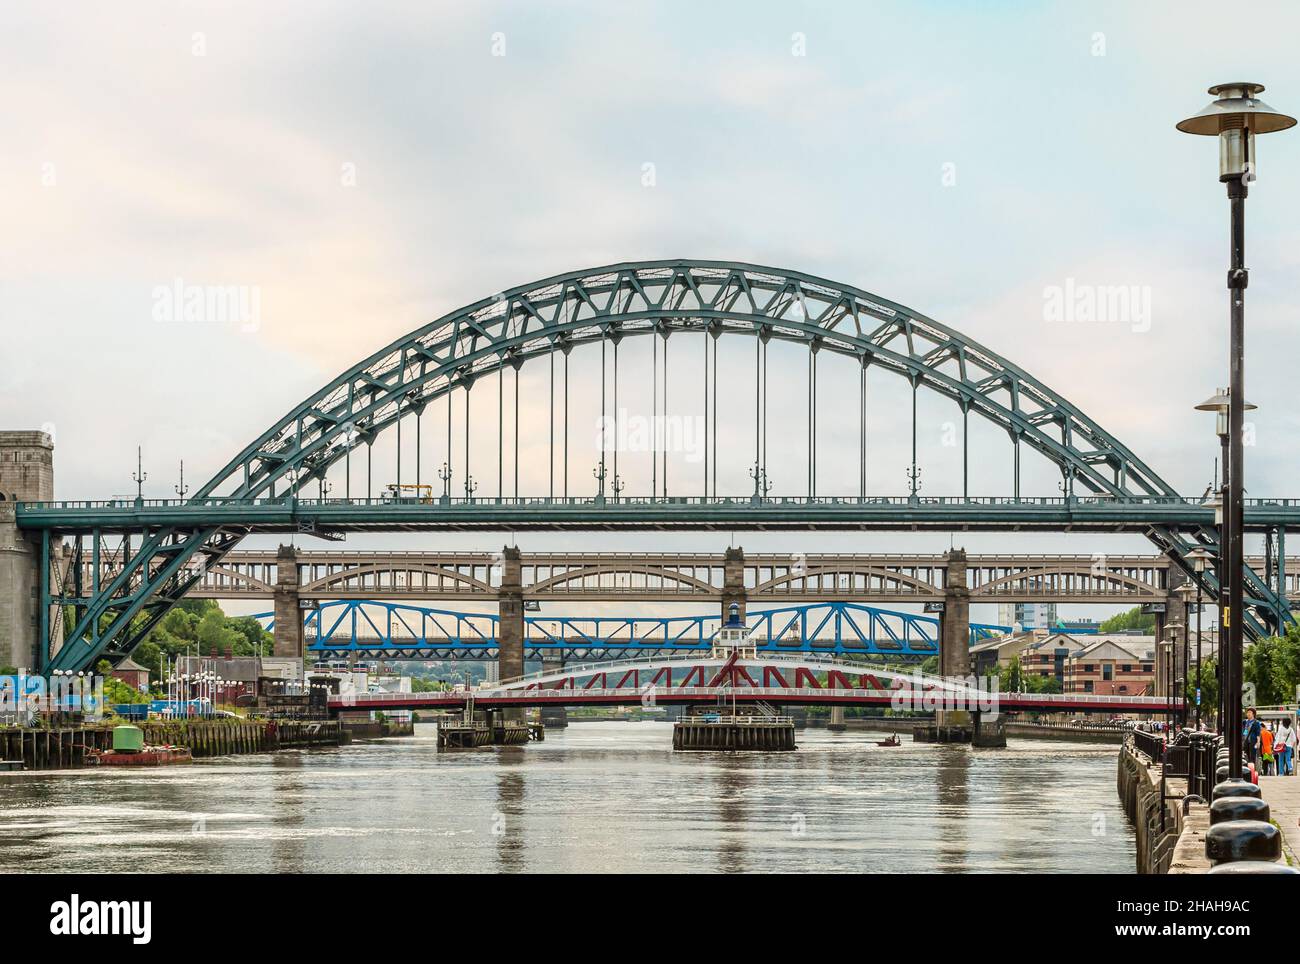 Pont de haut niveau, pont Tyne, pont Swing et pont Queen Elisabeth II traversant la rivière Tyne, Newcastle upon Tyne, Gateshead, Angleterre, Royaume-Uni Banque D'Images